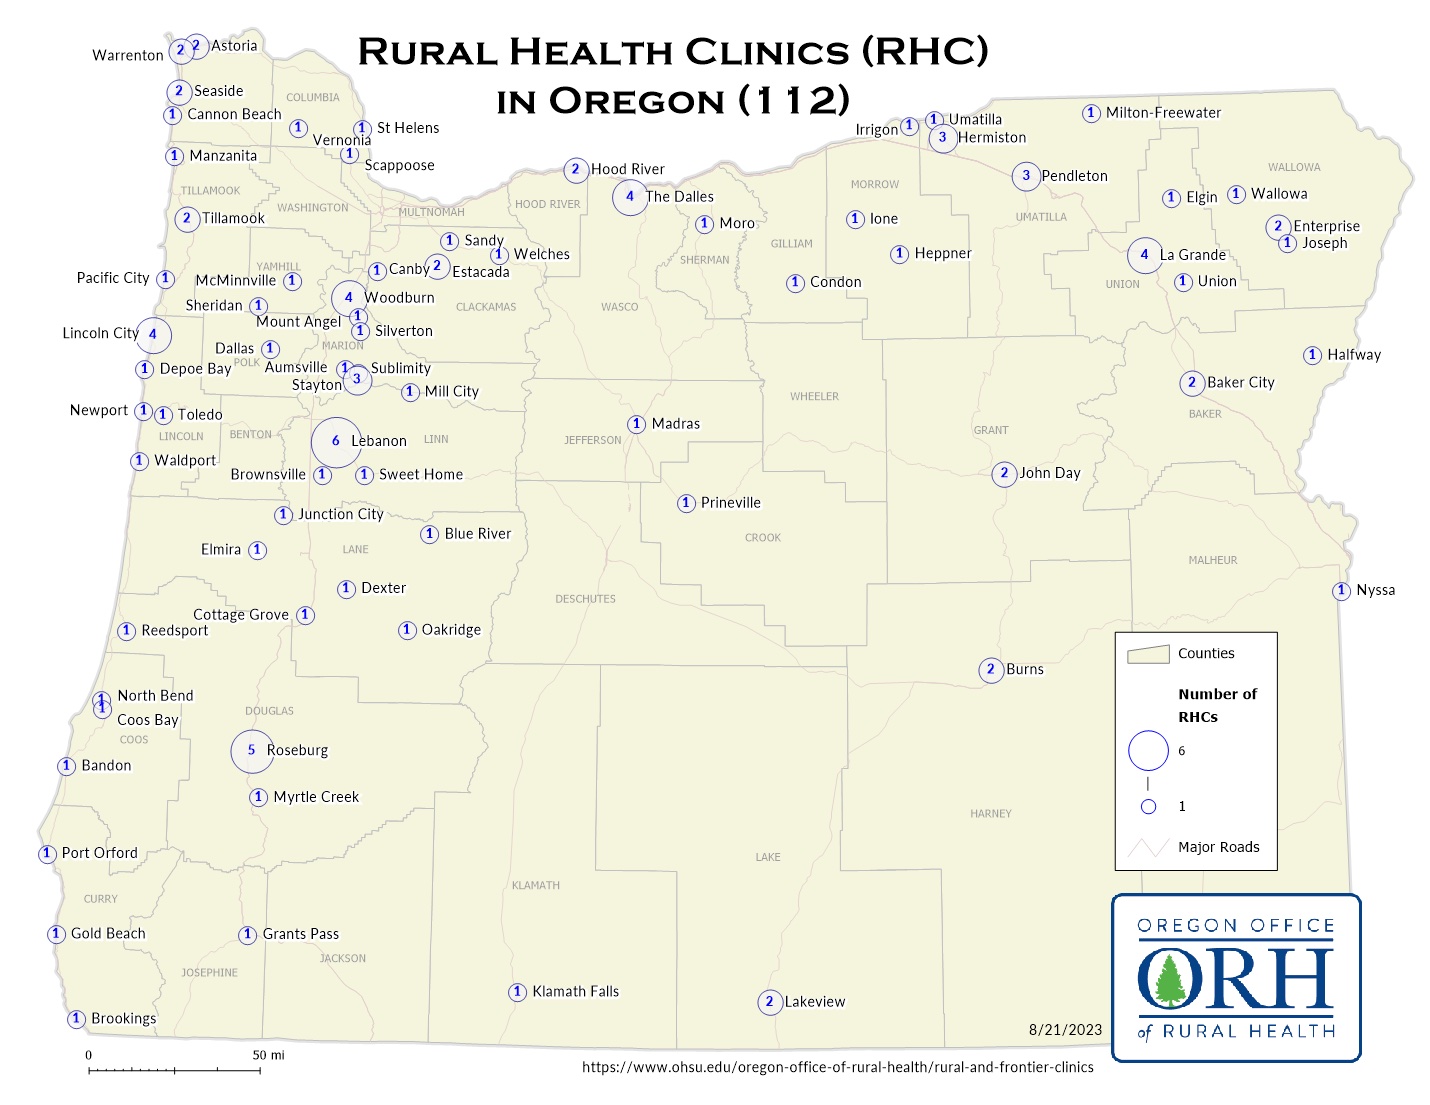 RHC Map in Oregon